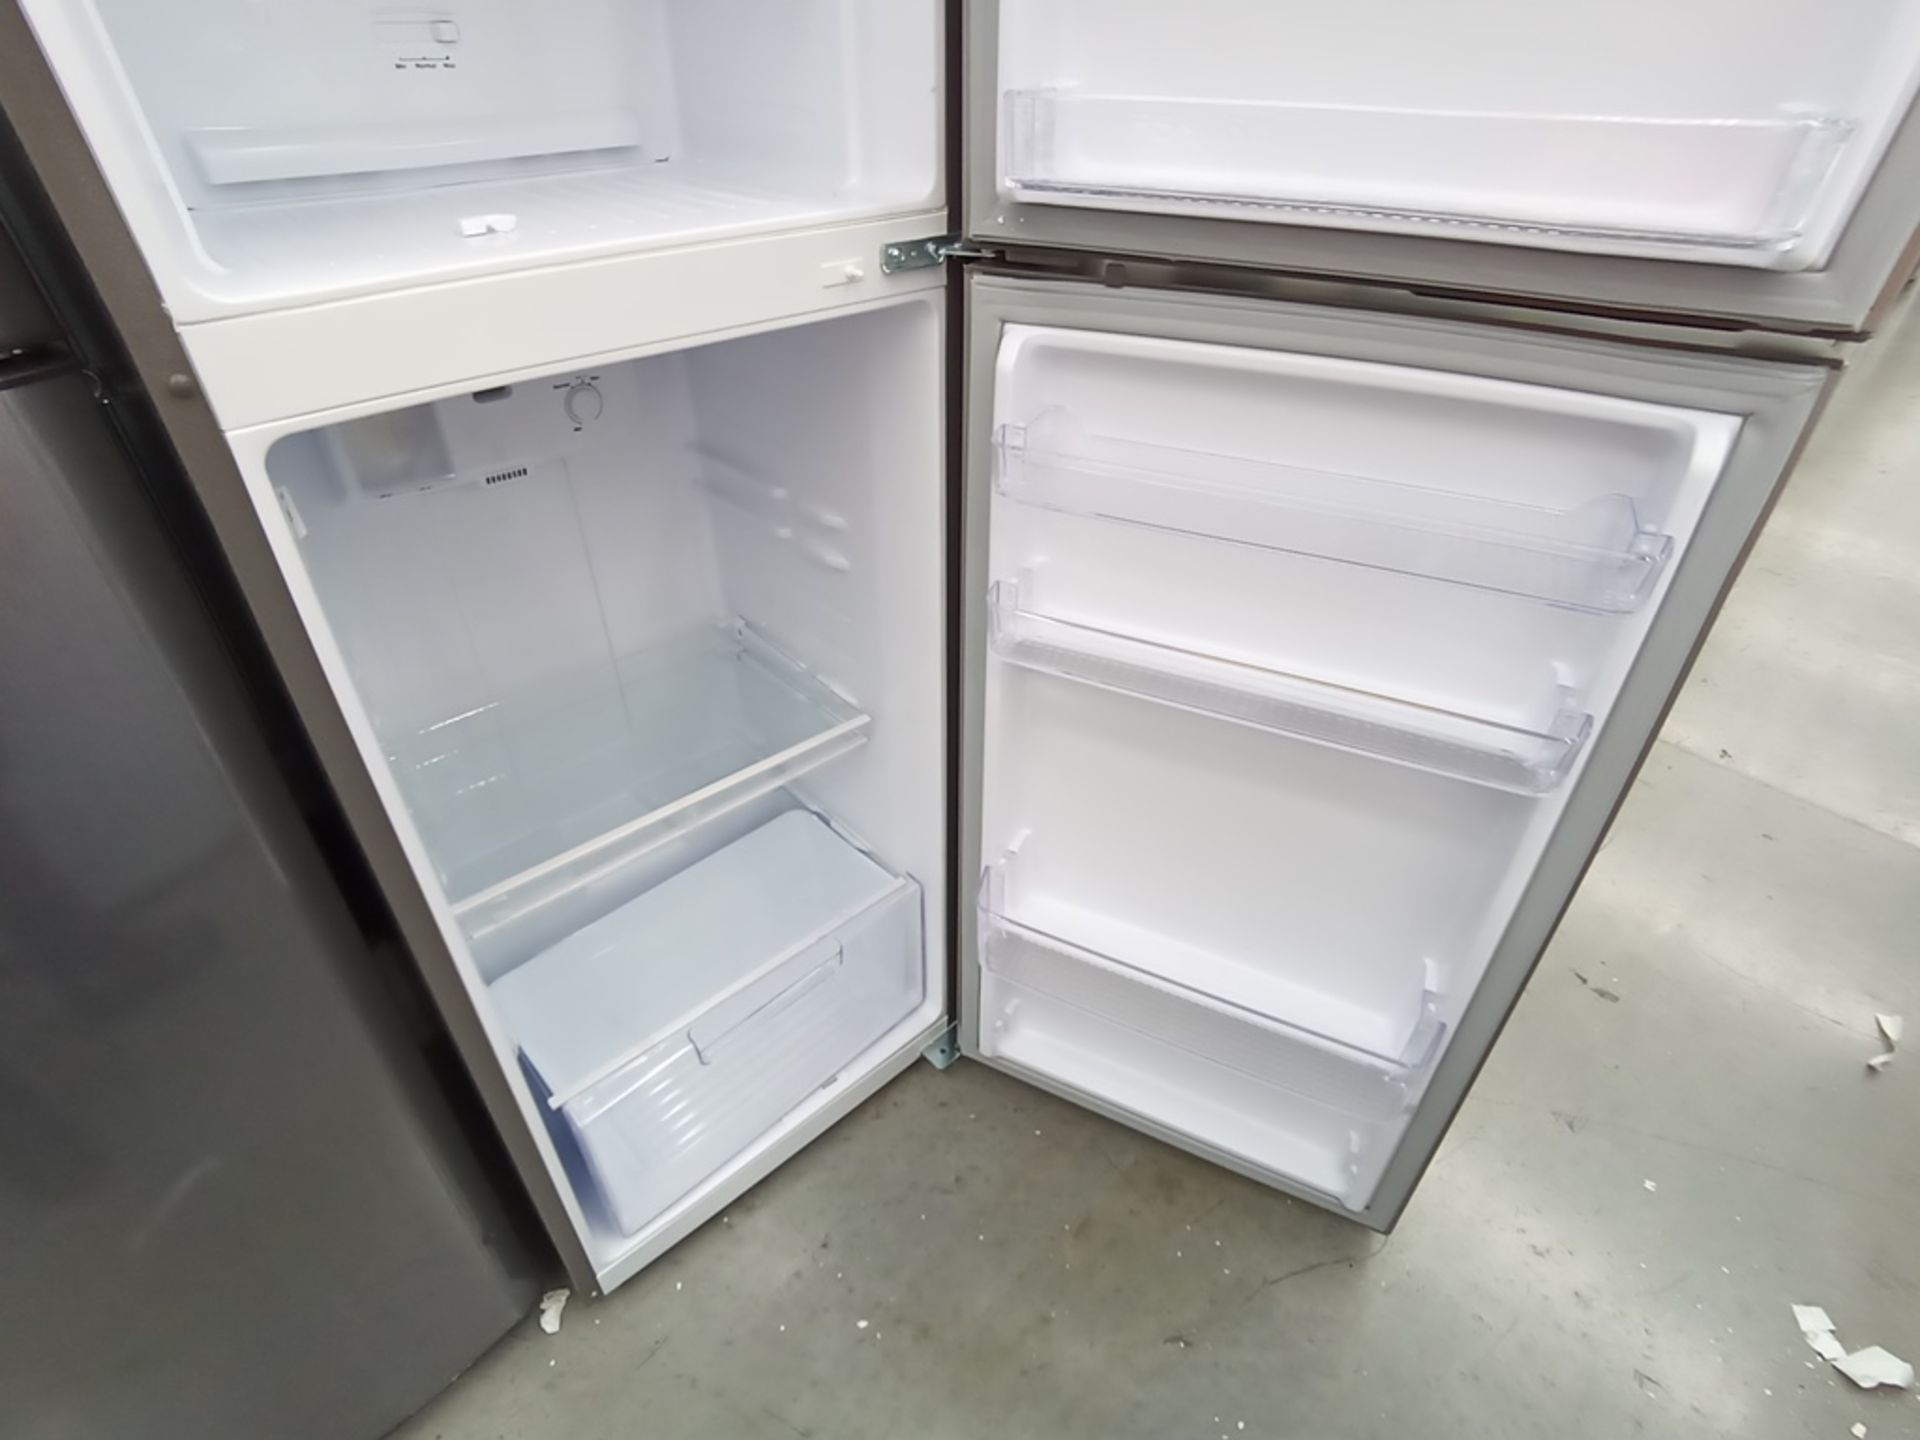 Lote de 2 refrigeradores contiene: 1 Refrigerador con dispensador de agua, Marca Winia, Modelo DFR- - Image 10 of 15